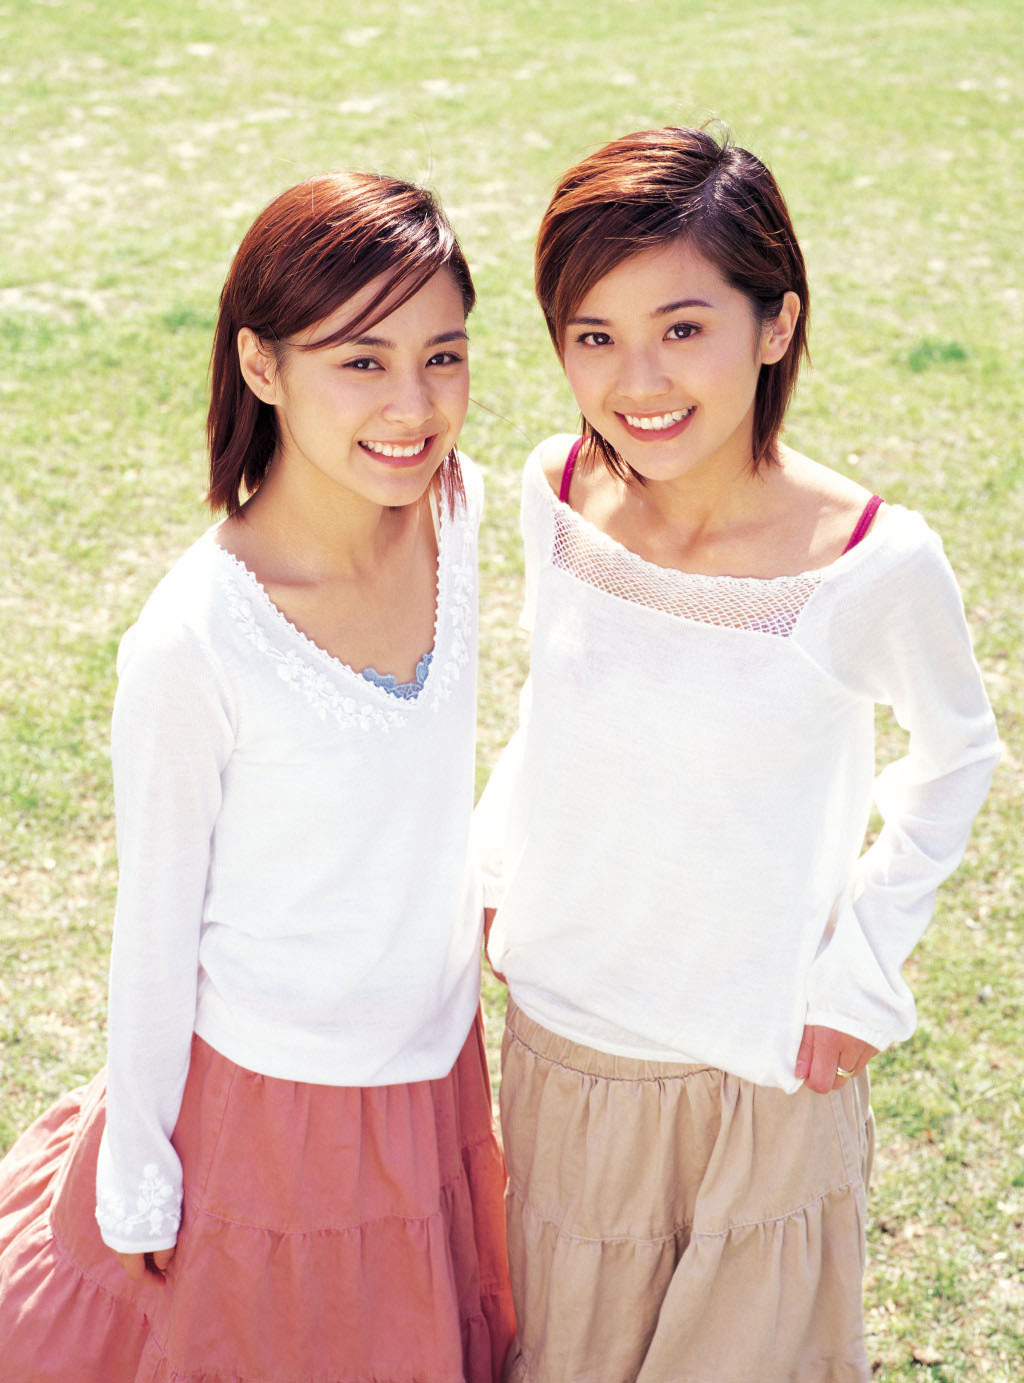 锺欣潼（左）是女子团体Twins成员。